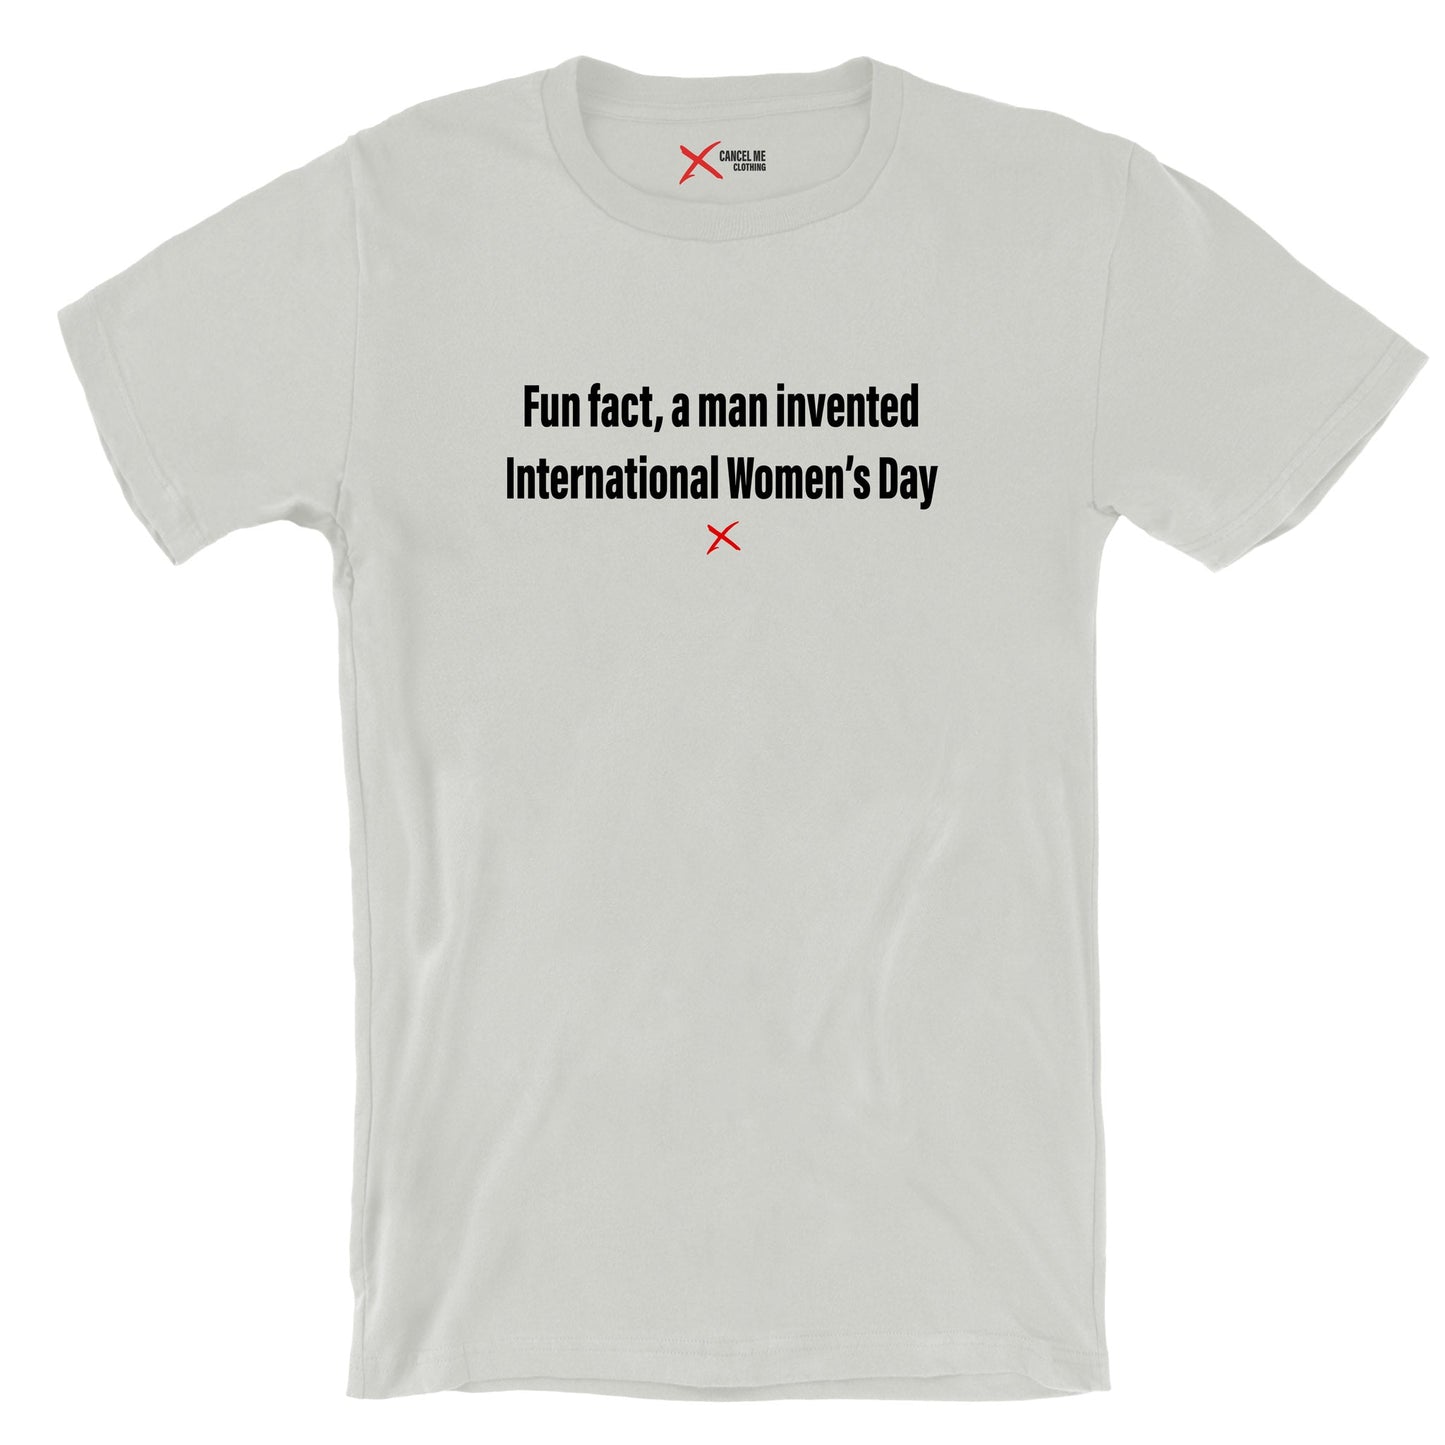 Fun fact, a man invented International Women's Day - Shirt